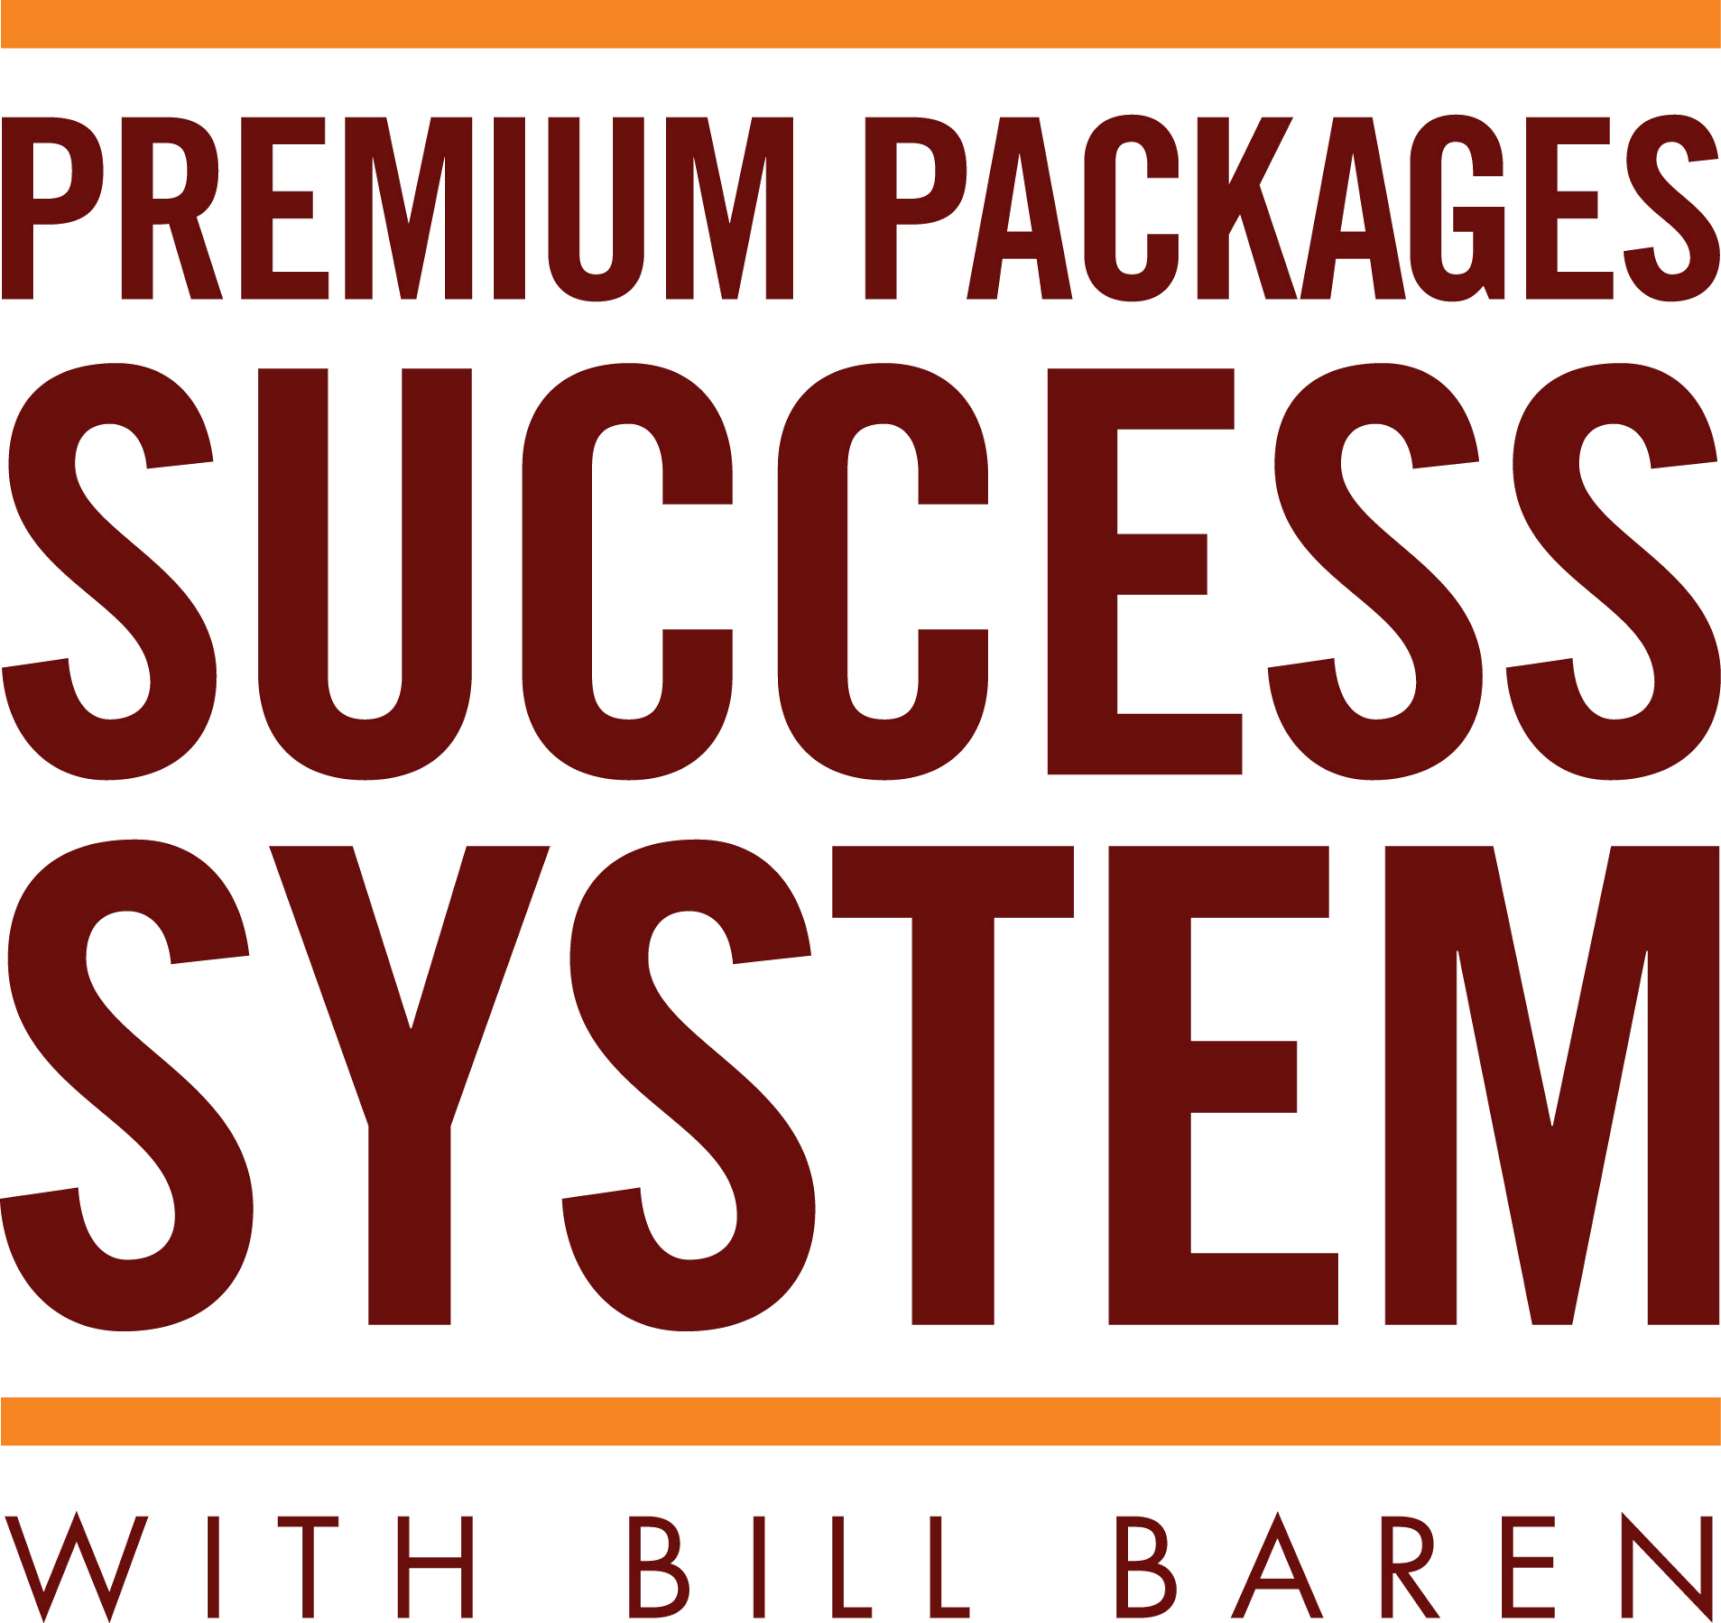 Bill Baren - Premium Packages Blueprint